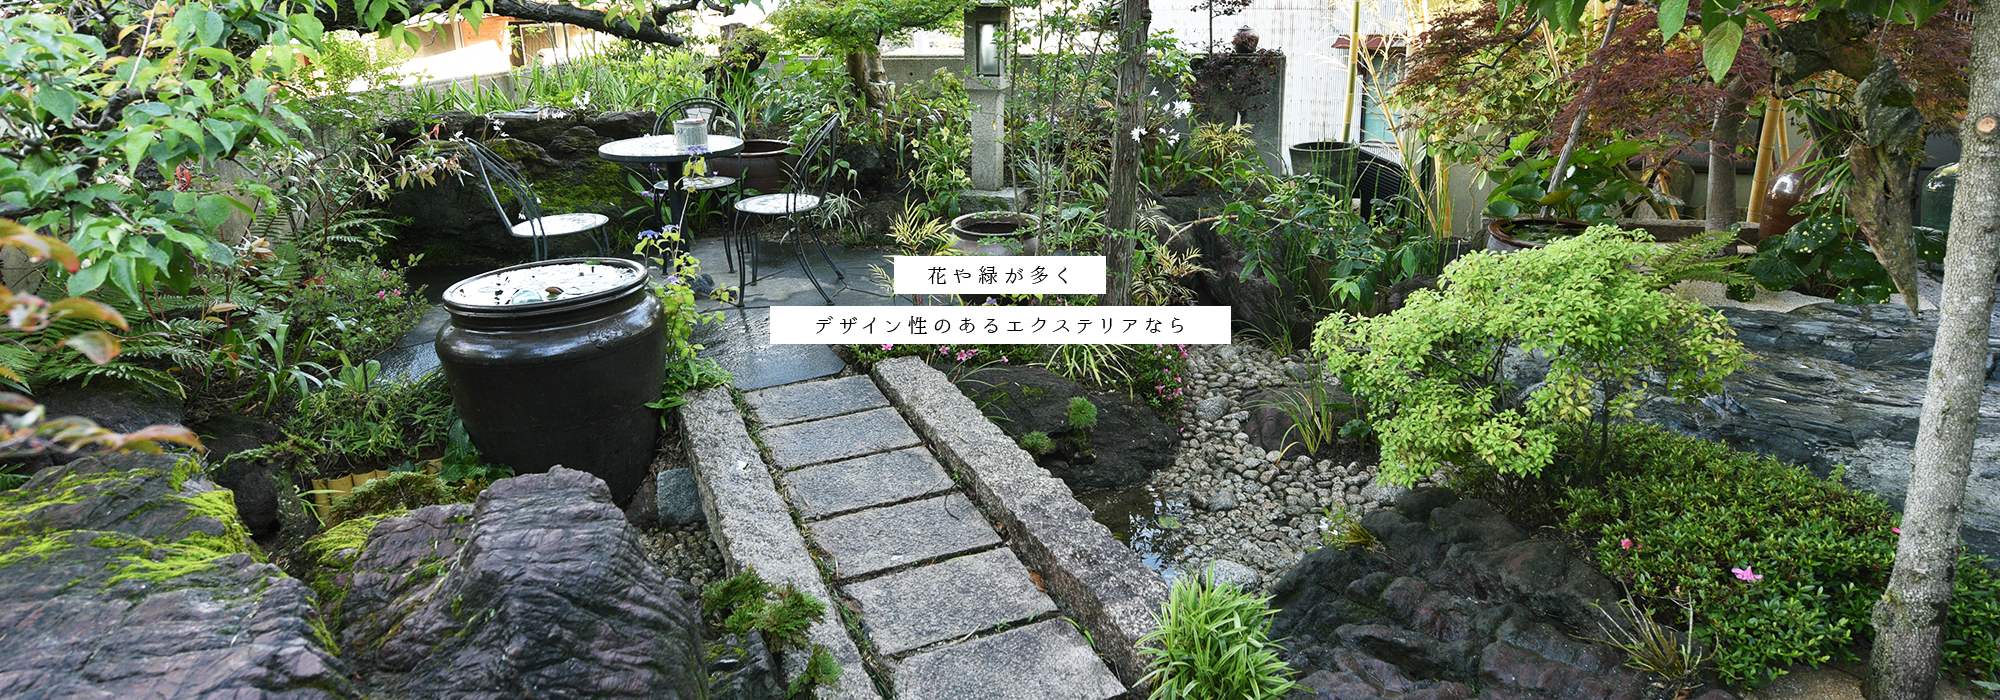 Nishimura Garden株式会社